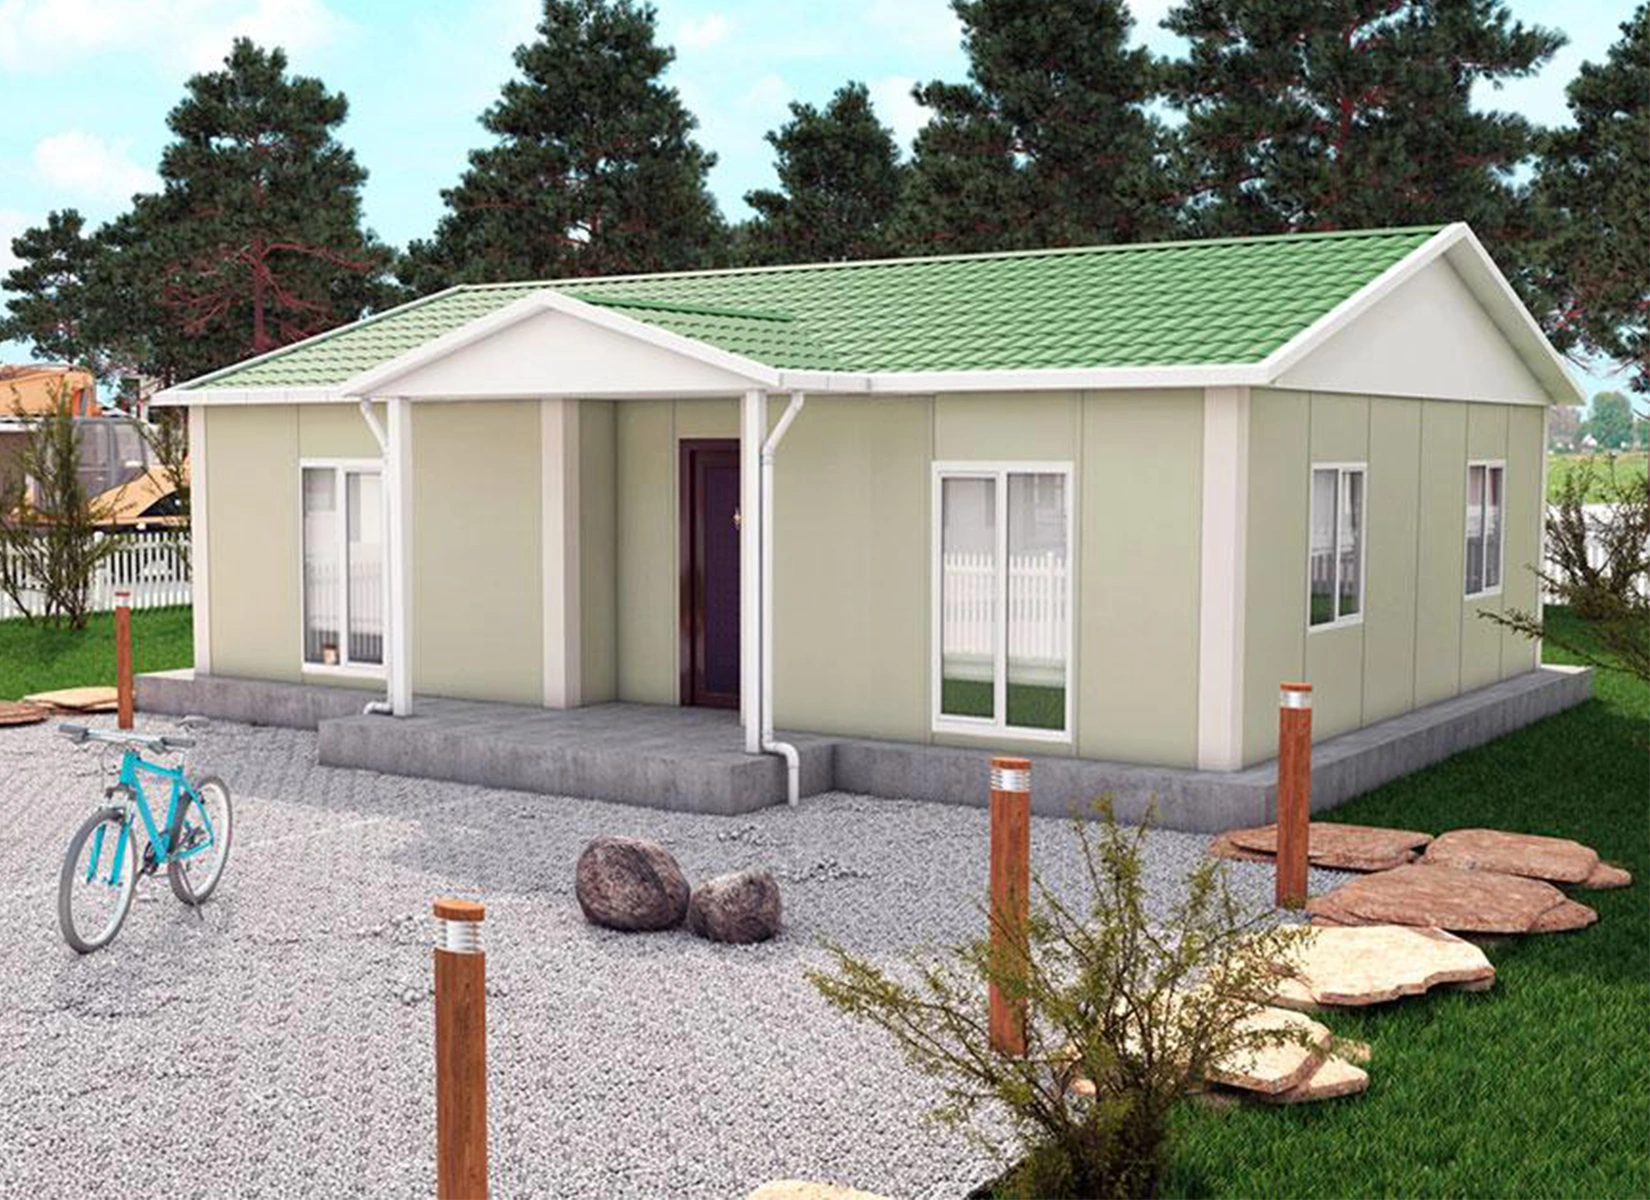 82 m² Tek Katlı Prefabrik Evler dincerler prefabrik ev ve güneş enerji sistemleri- Edirne-Keşan